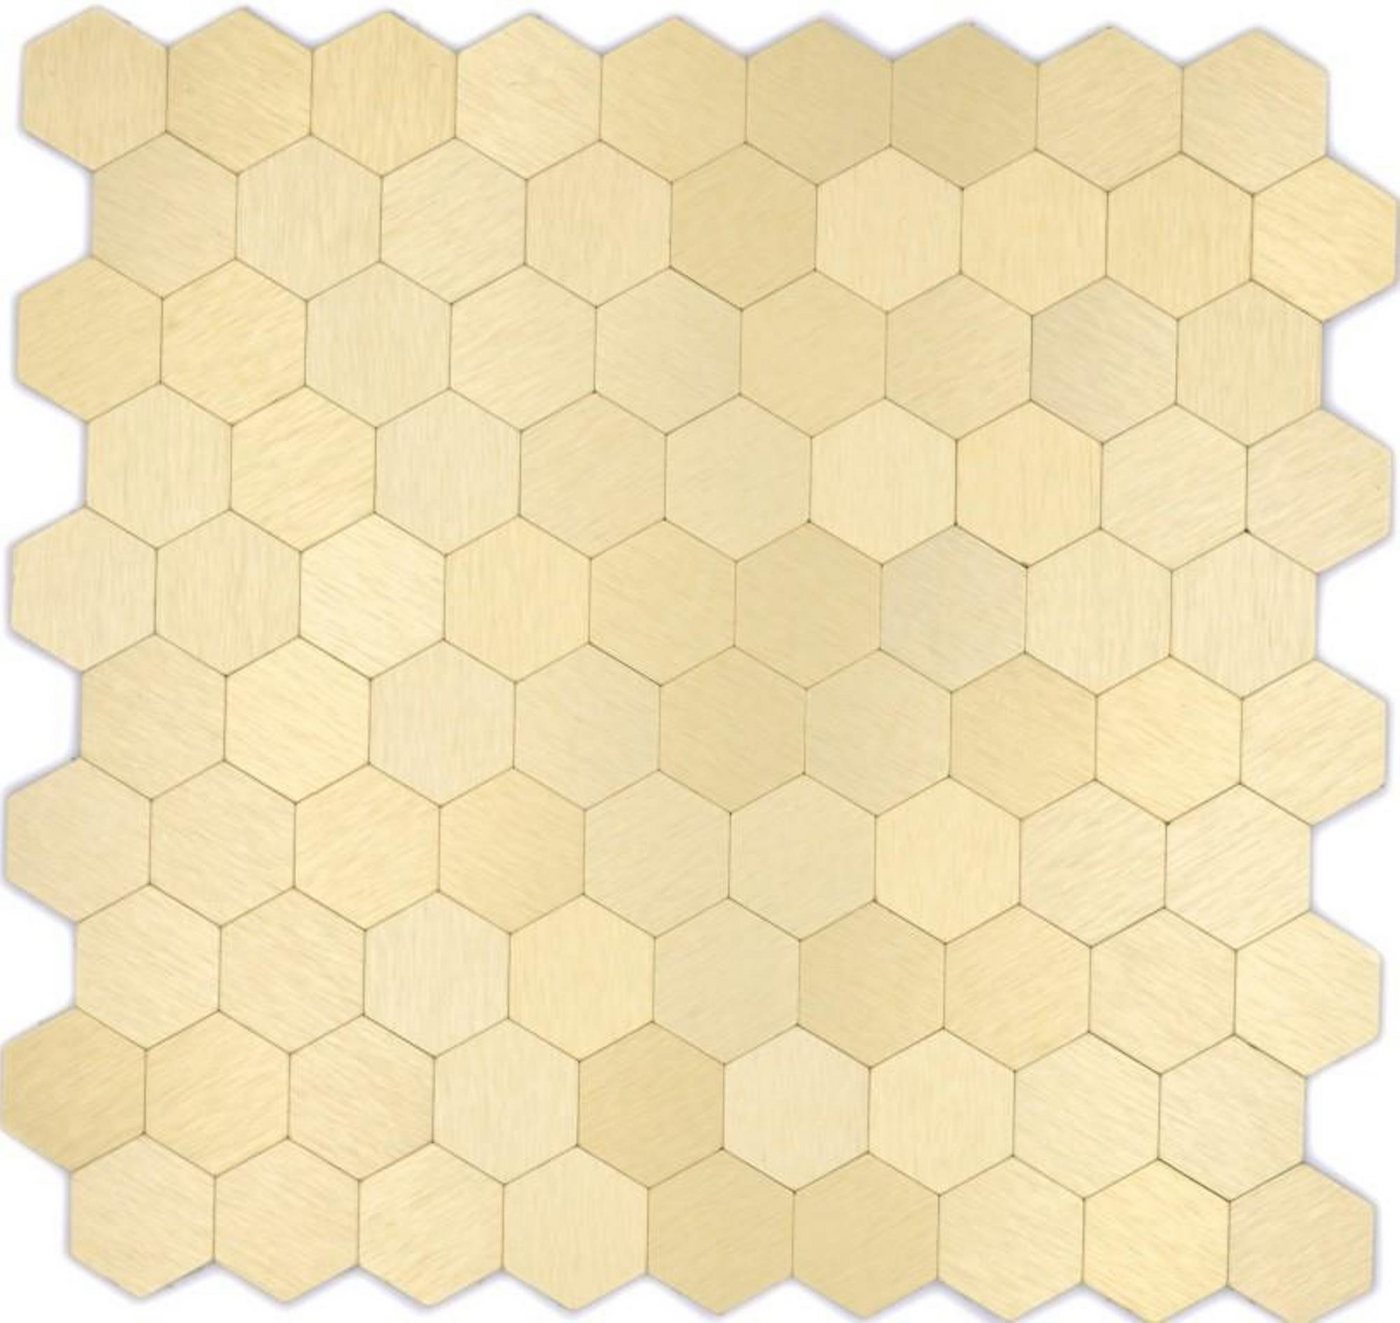 Mosani Aluminium Metall Mosaikfliesen Selbstklebende Wandfliesen Klebemosaik, Gold, Set, 10-teilig, 0,81 m², Spritzwasserbereich geeignet, Küchenrückwand Spritzschutz von Mosani